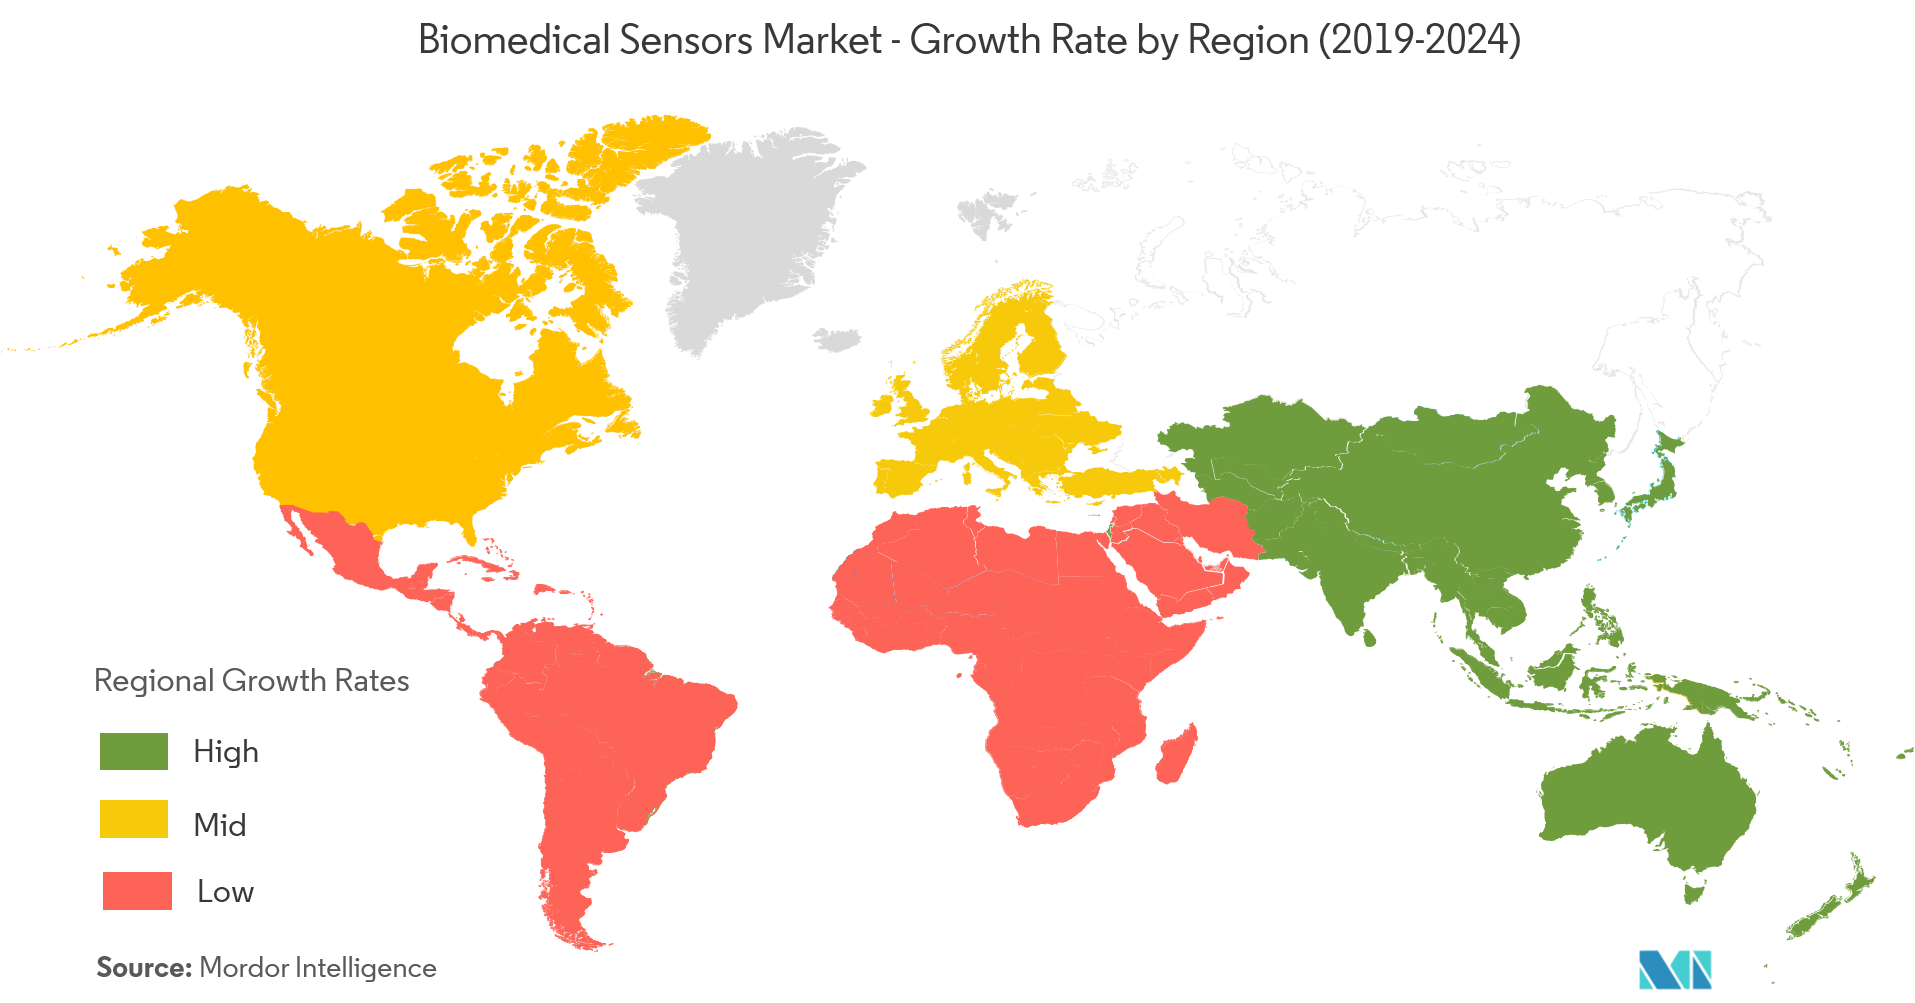 生物医学传感器市场 - 按地区划分的增长率（2019 - 2024）